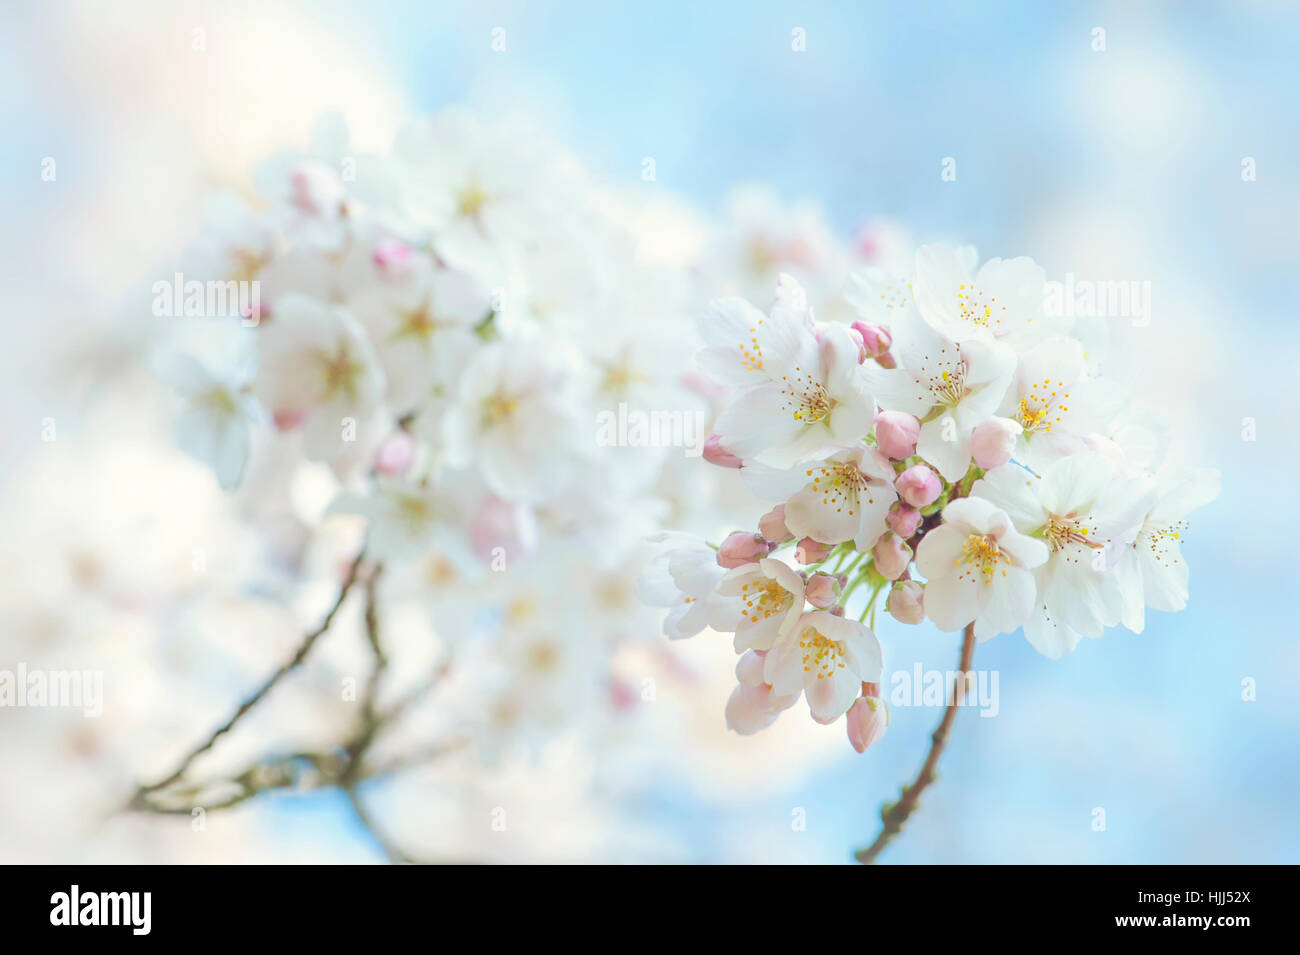 Image en gros plan de la délicate blanc de printemps de l'oranger Sakura arbre de cerise Yoshino, les images prises à l'encontre d'un ciel bleu. Banque D'Images